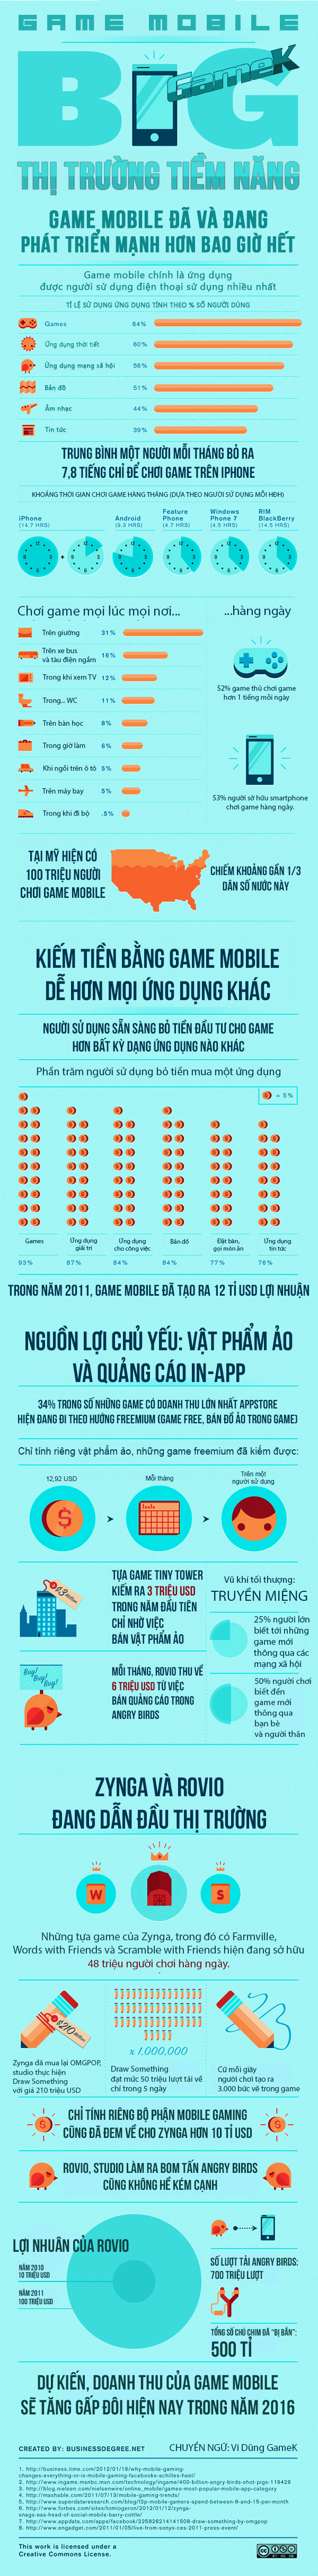 infographic-ban-biet-gi-ve-game-mobile